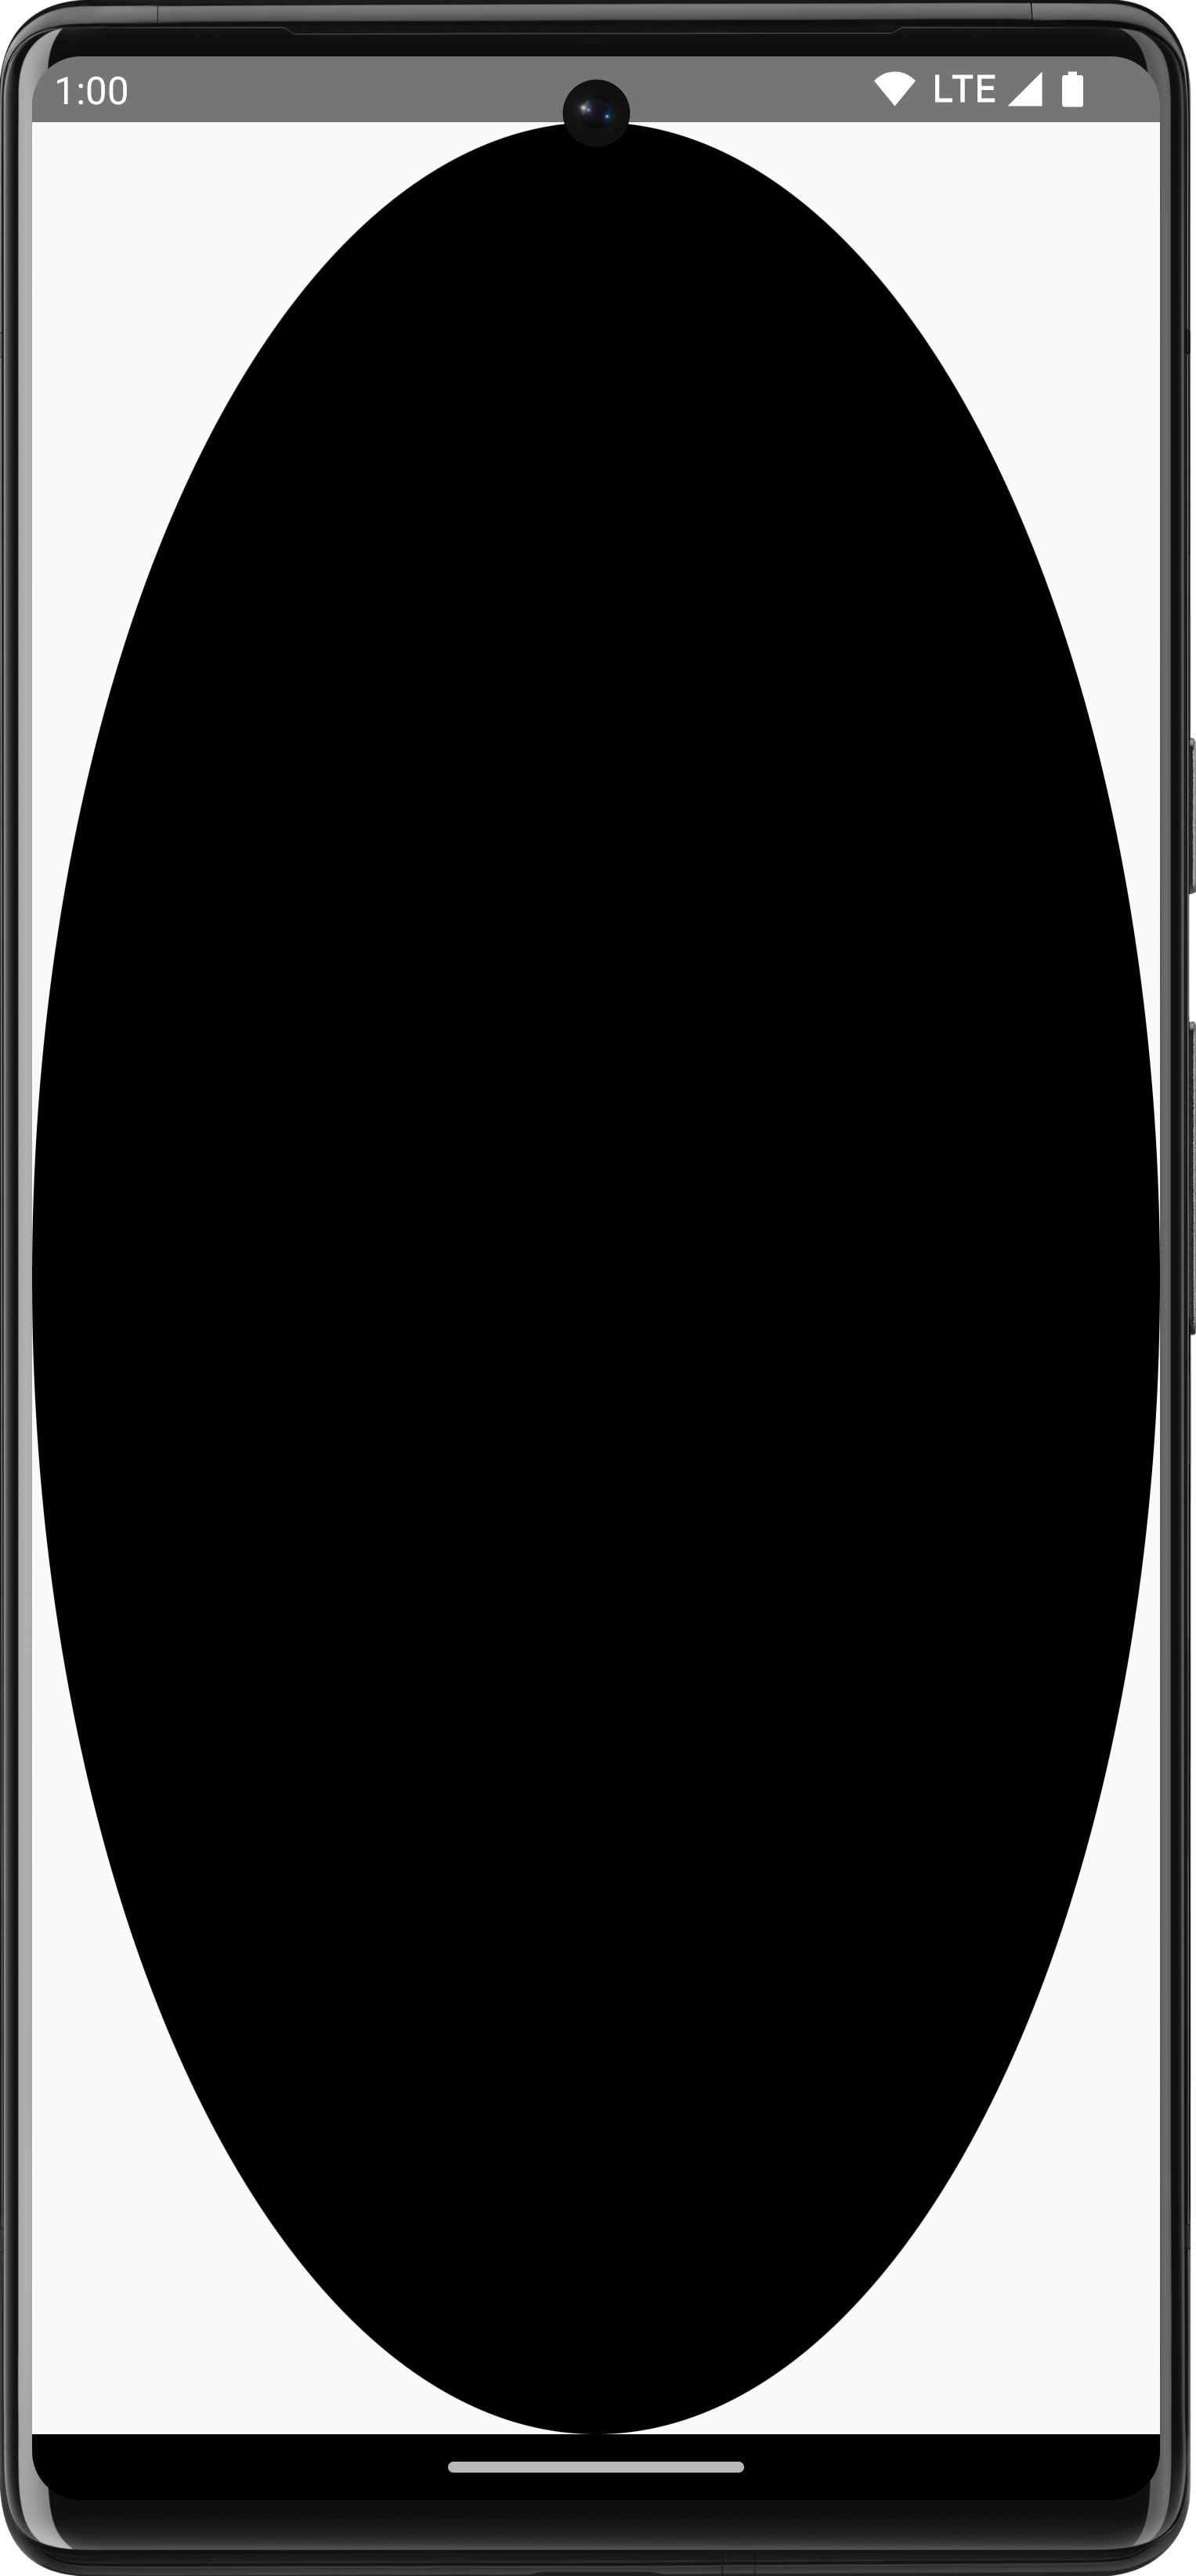 Czarny, owalny obraz shapeDrawable zajmujący pełny rozmiar